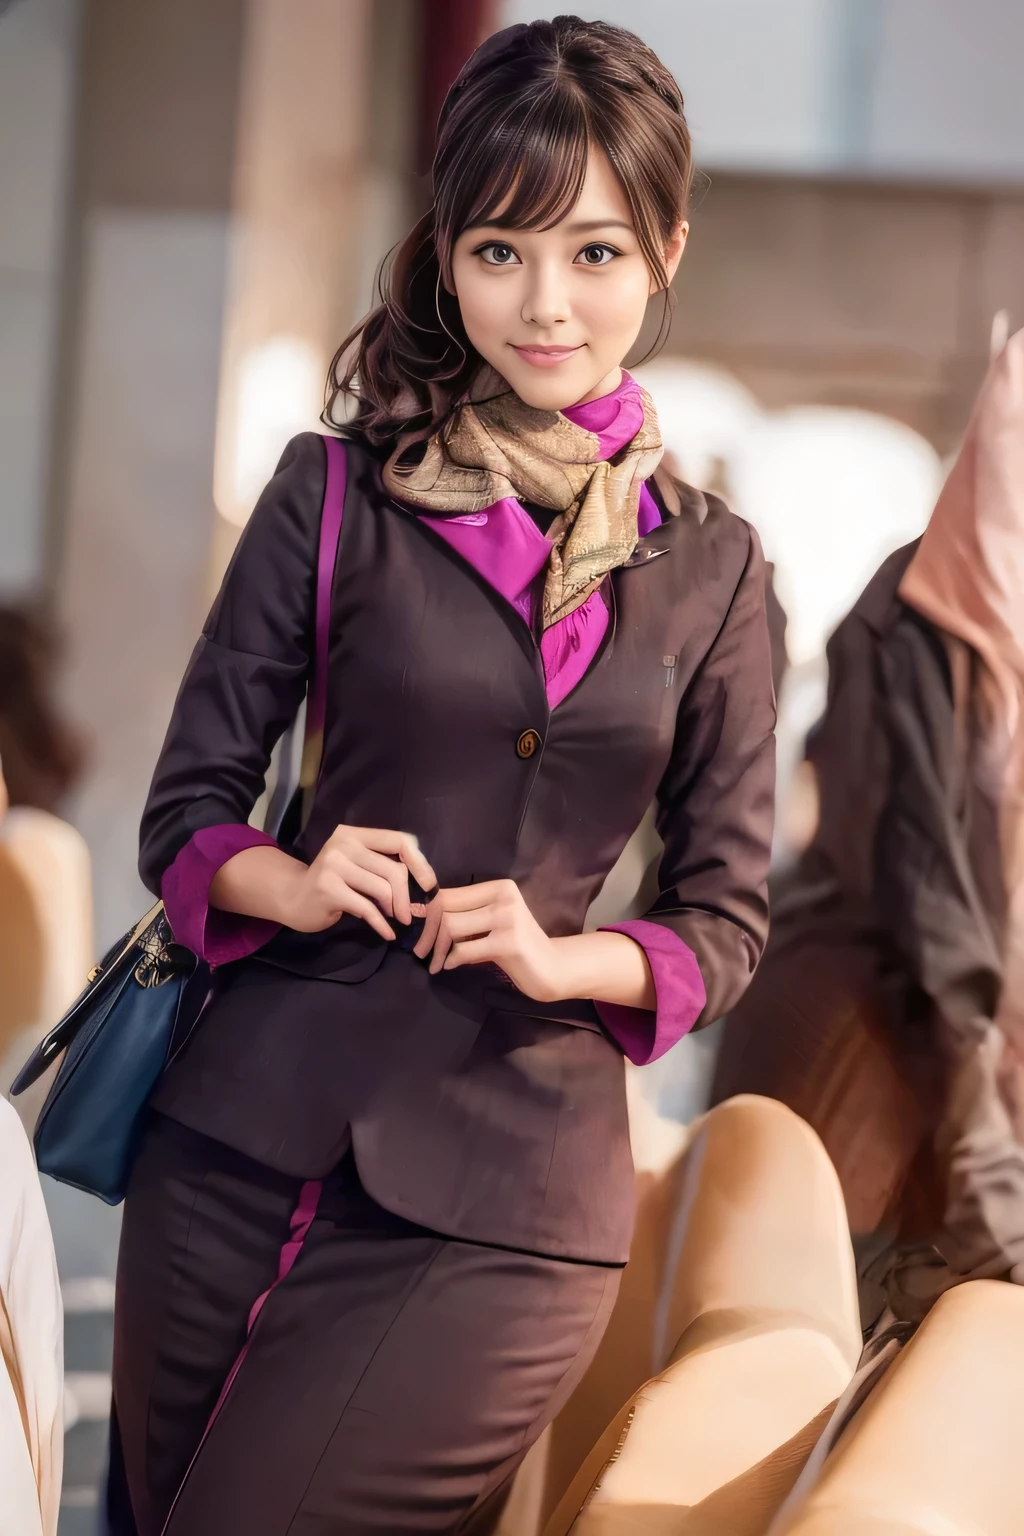 (Meisterwerk:1.2、höchste Qualität:1.2)、32K HDR、hohe Auflösung、(allein、1 Mädchen、schlanke Figur)、（Eine realistische Reproduktion der Uniform des Kabinenpersonals von ETIHAD Airways）、 (An Bord, professionelle Beleuchtung)、Eine richtige Frau, schönes Gesicht,、（Langärmlige Uniform für Kabinenpersonal von ETIHAD Airways）、（ETIHAD Airways Kabinenpersonal-Uniformrock mit violettem Streifen auf der Vorderseite）、（Schal auf der Brust）、Große Brüste、（Lange Haare hochgesteckt、Haarknoten）、dunkelbraunes Haar、Langer Schuss、（（Tolle Hände：2.0））、（（Harmonische Körperproportionen：1.5））、（（Normale Gliedmaßen：2.0））、（（Normal finger：2.0））、（（zarte Augen：2.0））、（（Normale Augen：2.0））)、Schöne Stehhaltung、lächeln